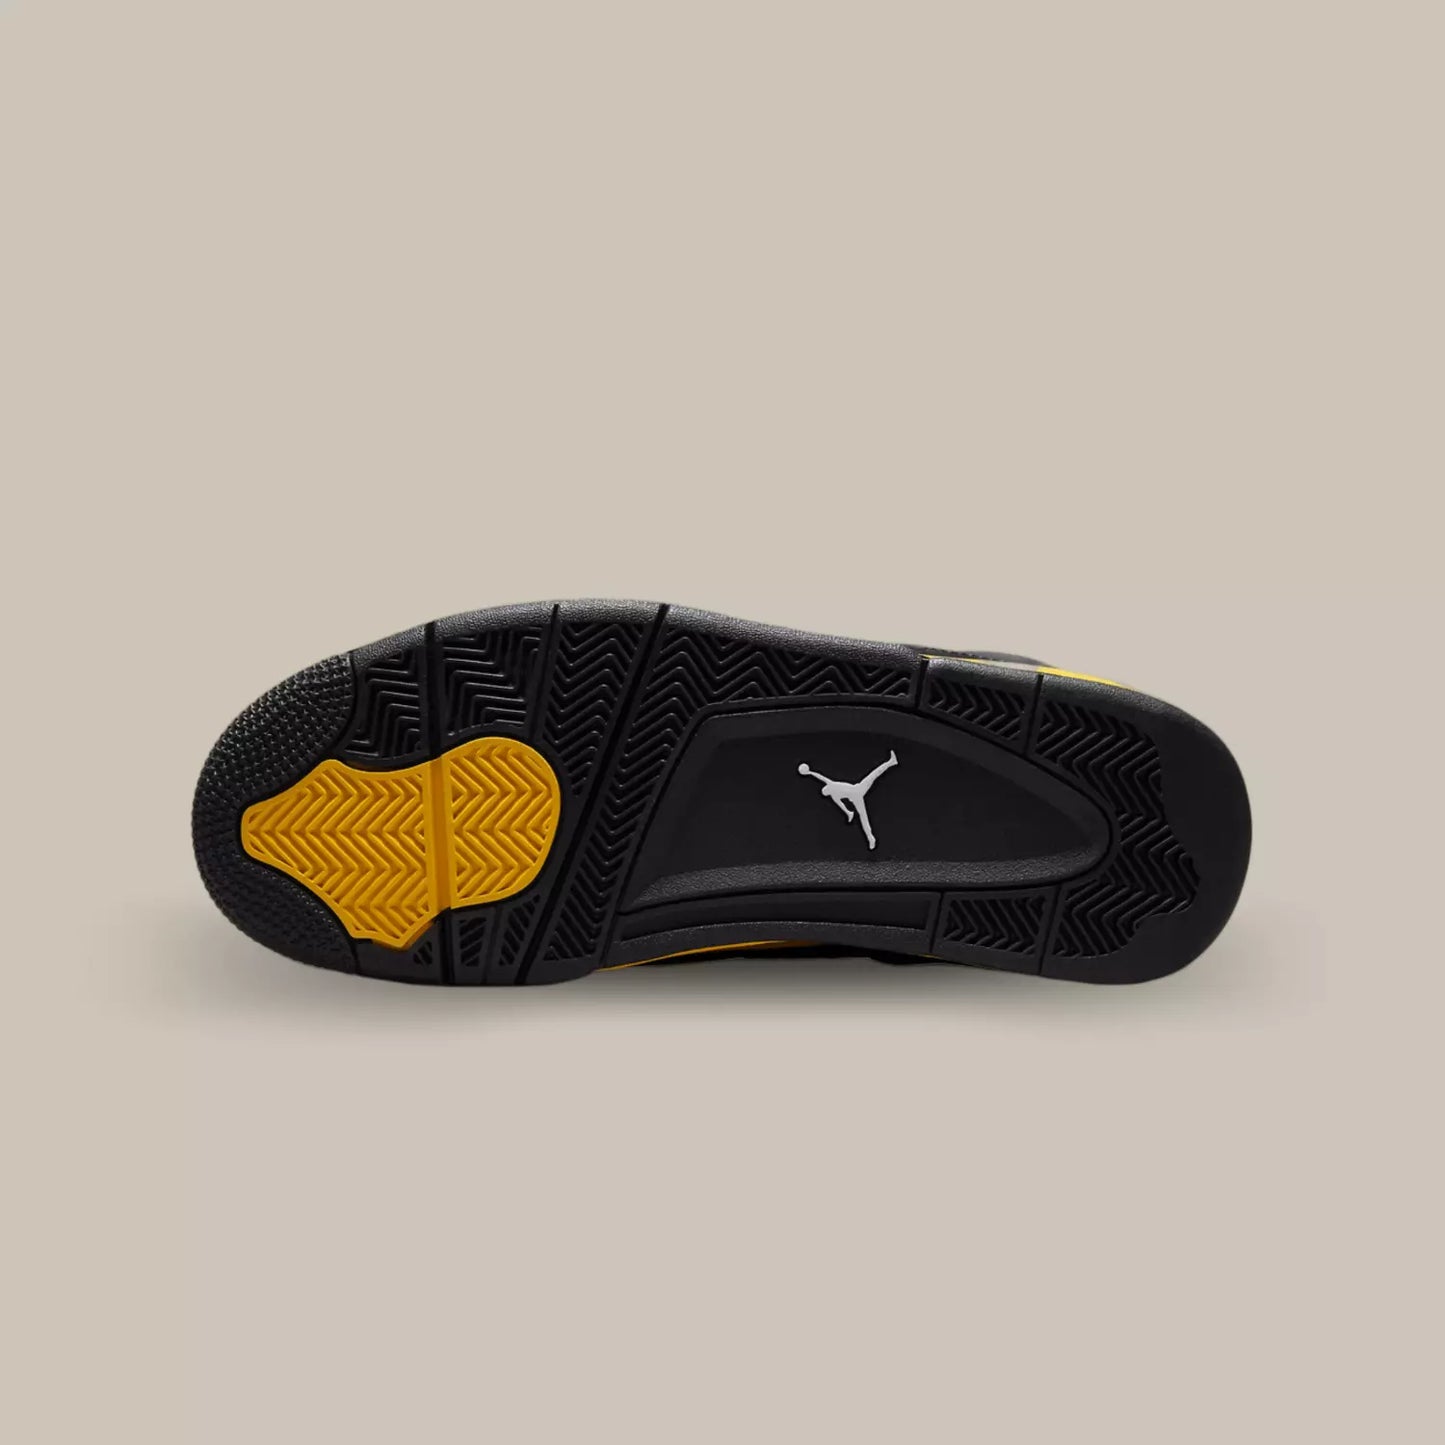 La semelle de La Air Jordan 4 Retro Thunder de couleur noir et jaune.